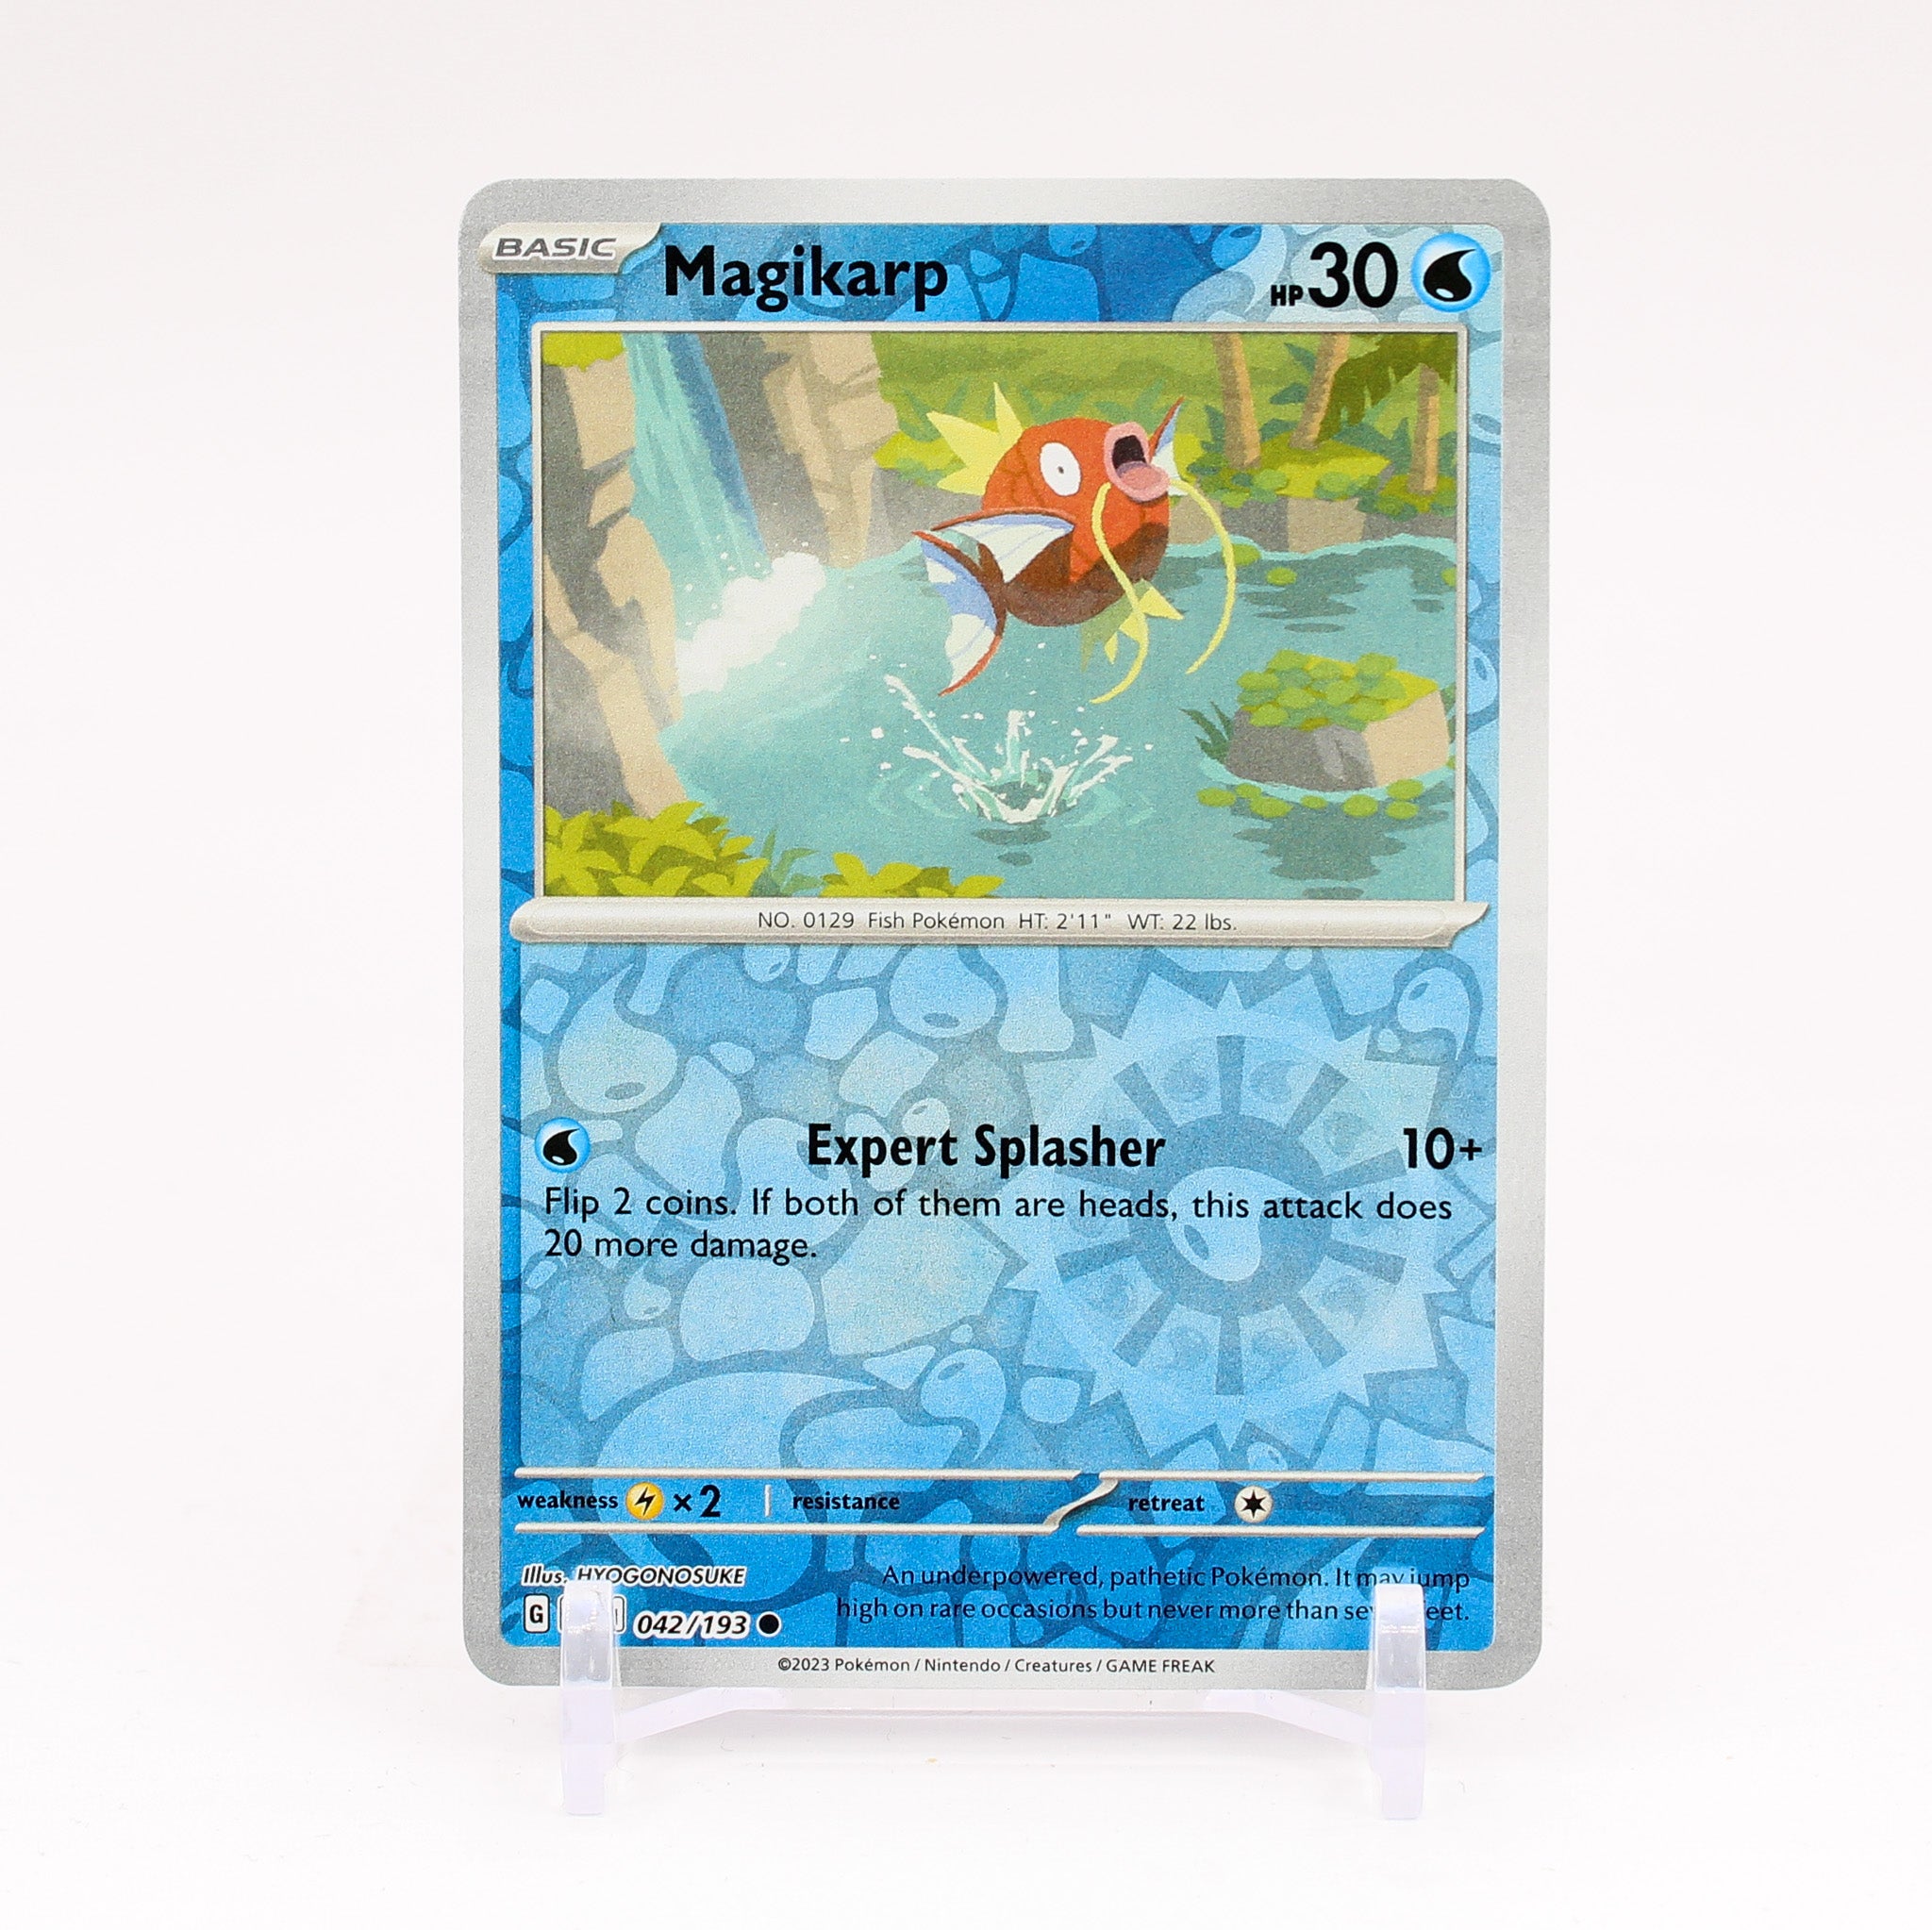 Magikarp - 042/193 Paldea Evolved Reverse Holo Common Pokemon - NM/MINT